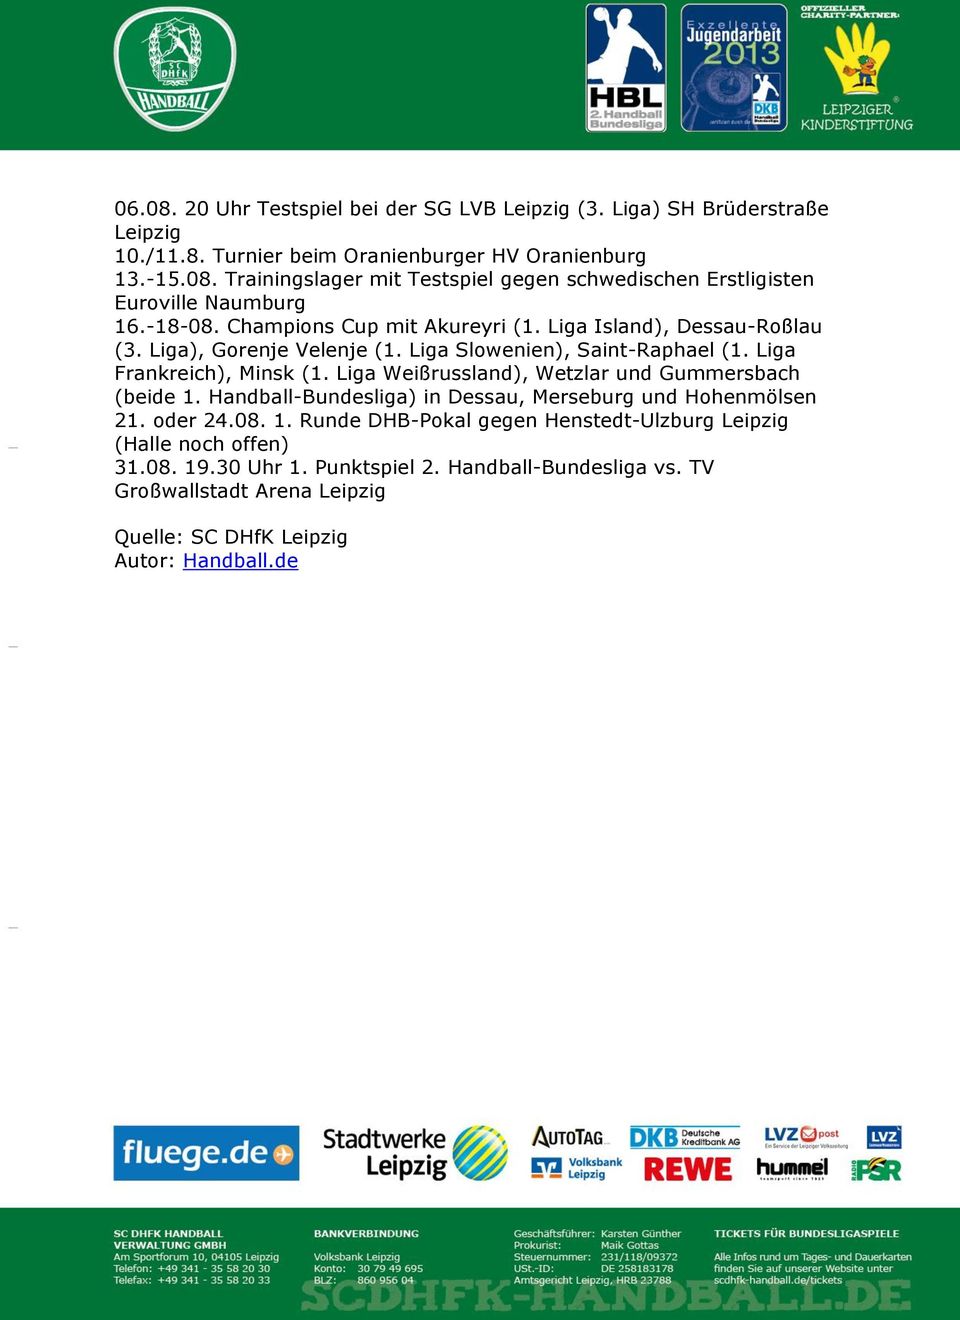 Liga Weißrussland), Wetzlar und Gummersbach (beide 1. Handball-Bundesliga) in Dessau, Merseburg und Hohenmölsen 21. oder 24.08. 1. Runde DHB-Pokal gegen Henstedt-Ulzburg Leipzig (Halle noch offen) 31.